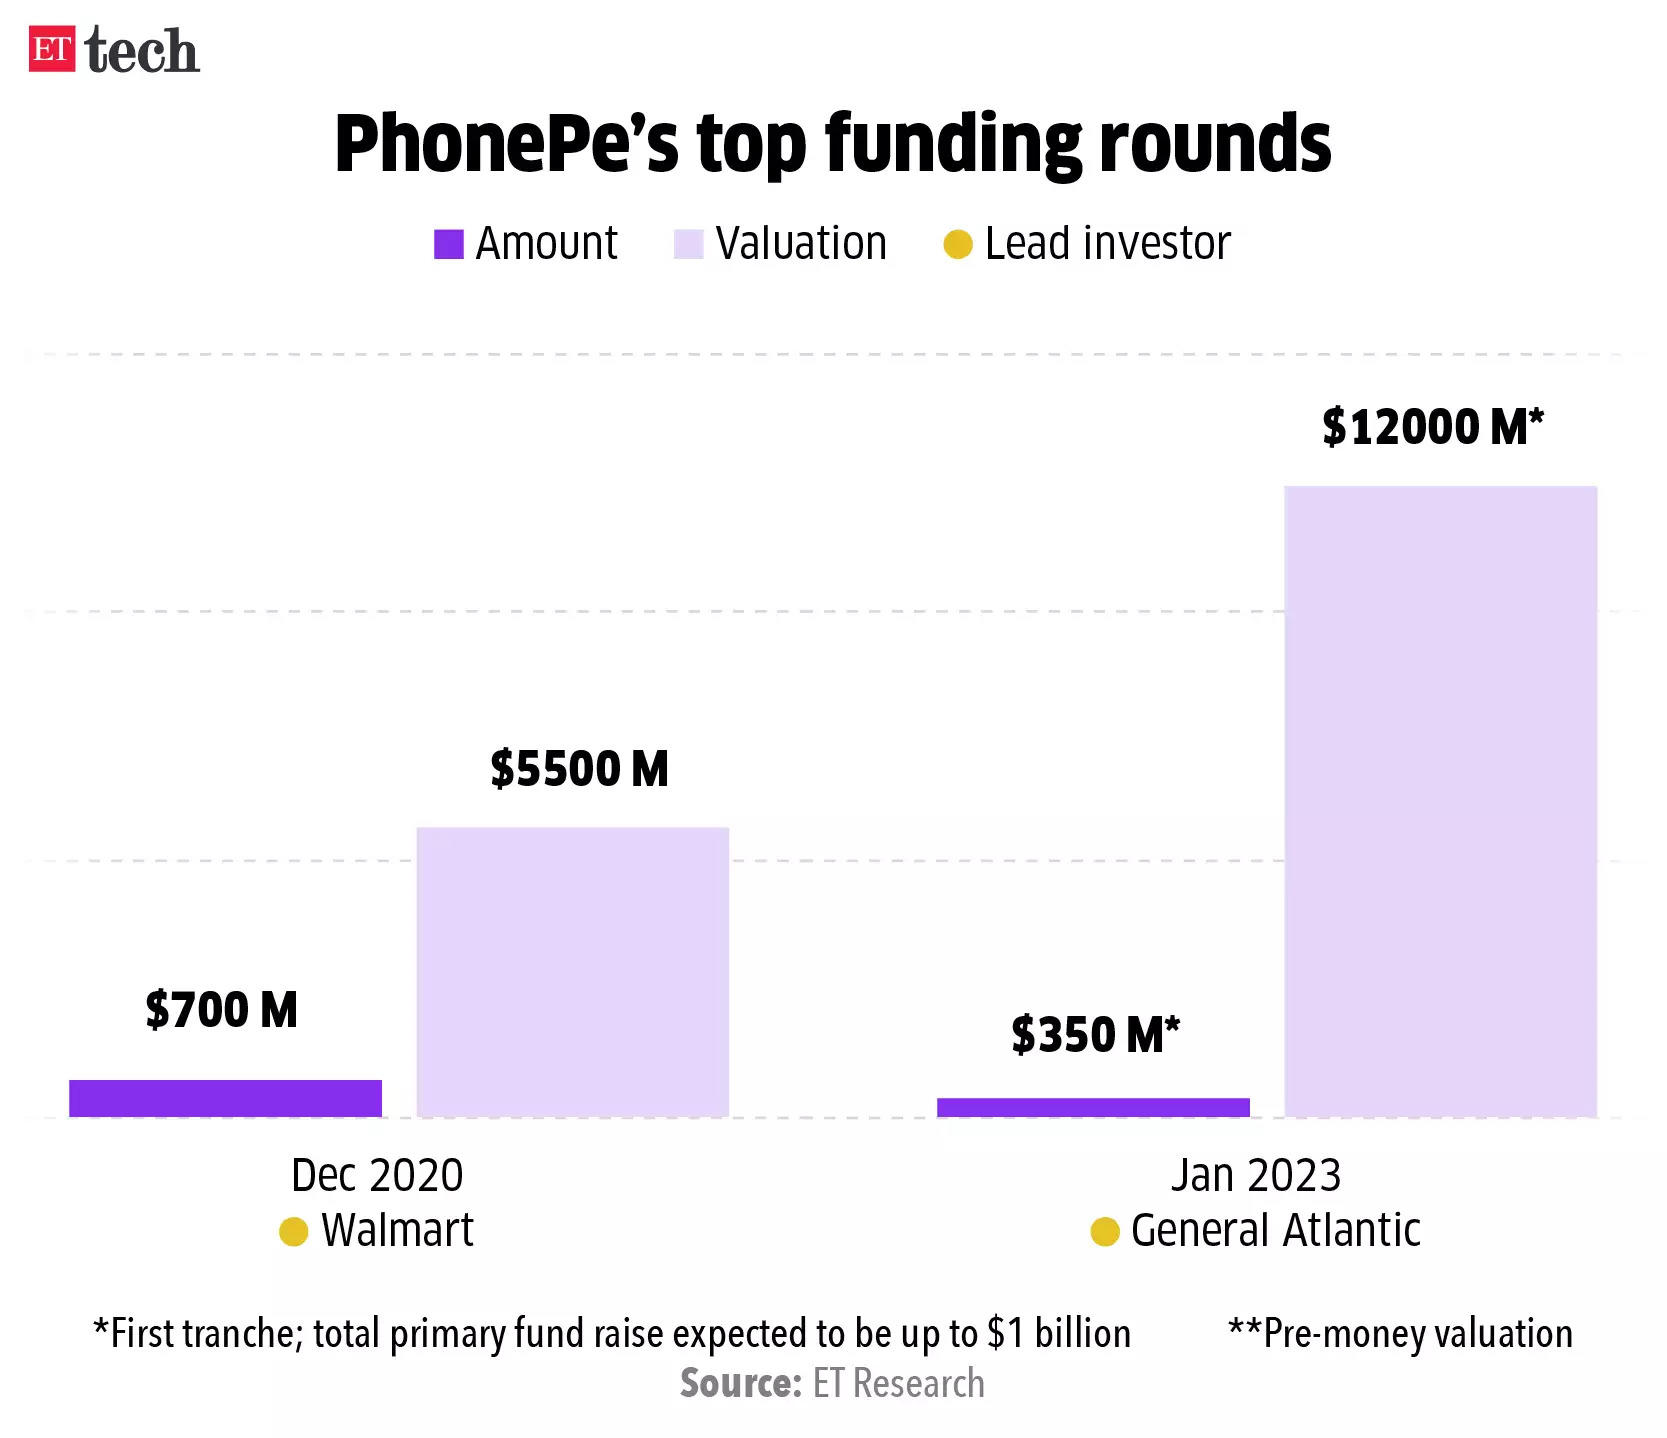 PhonePe funding round